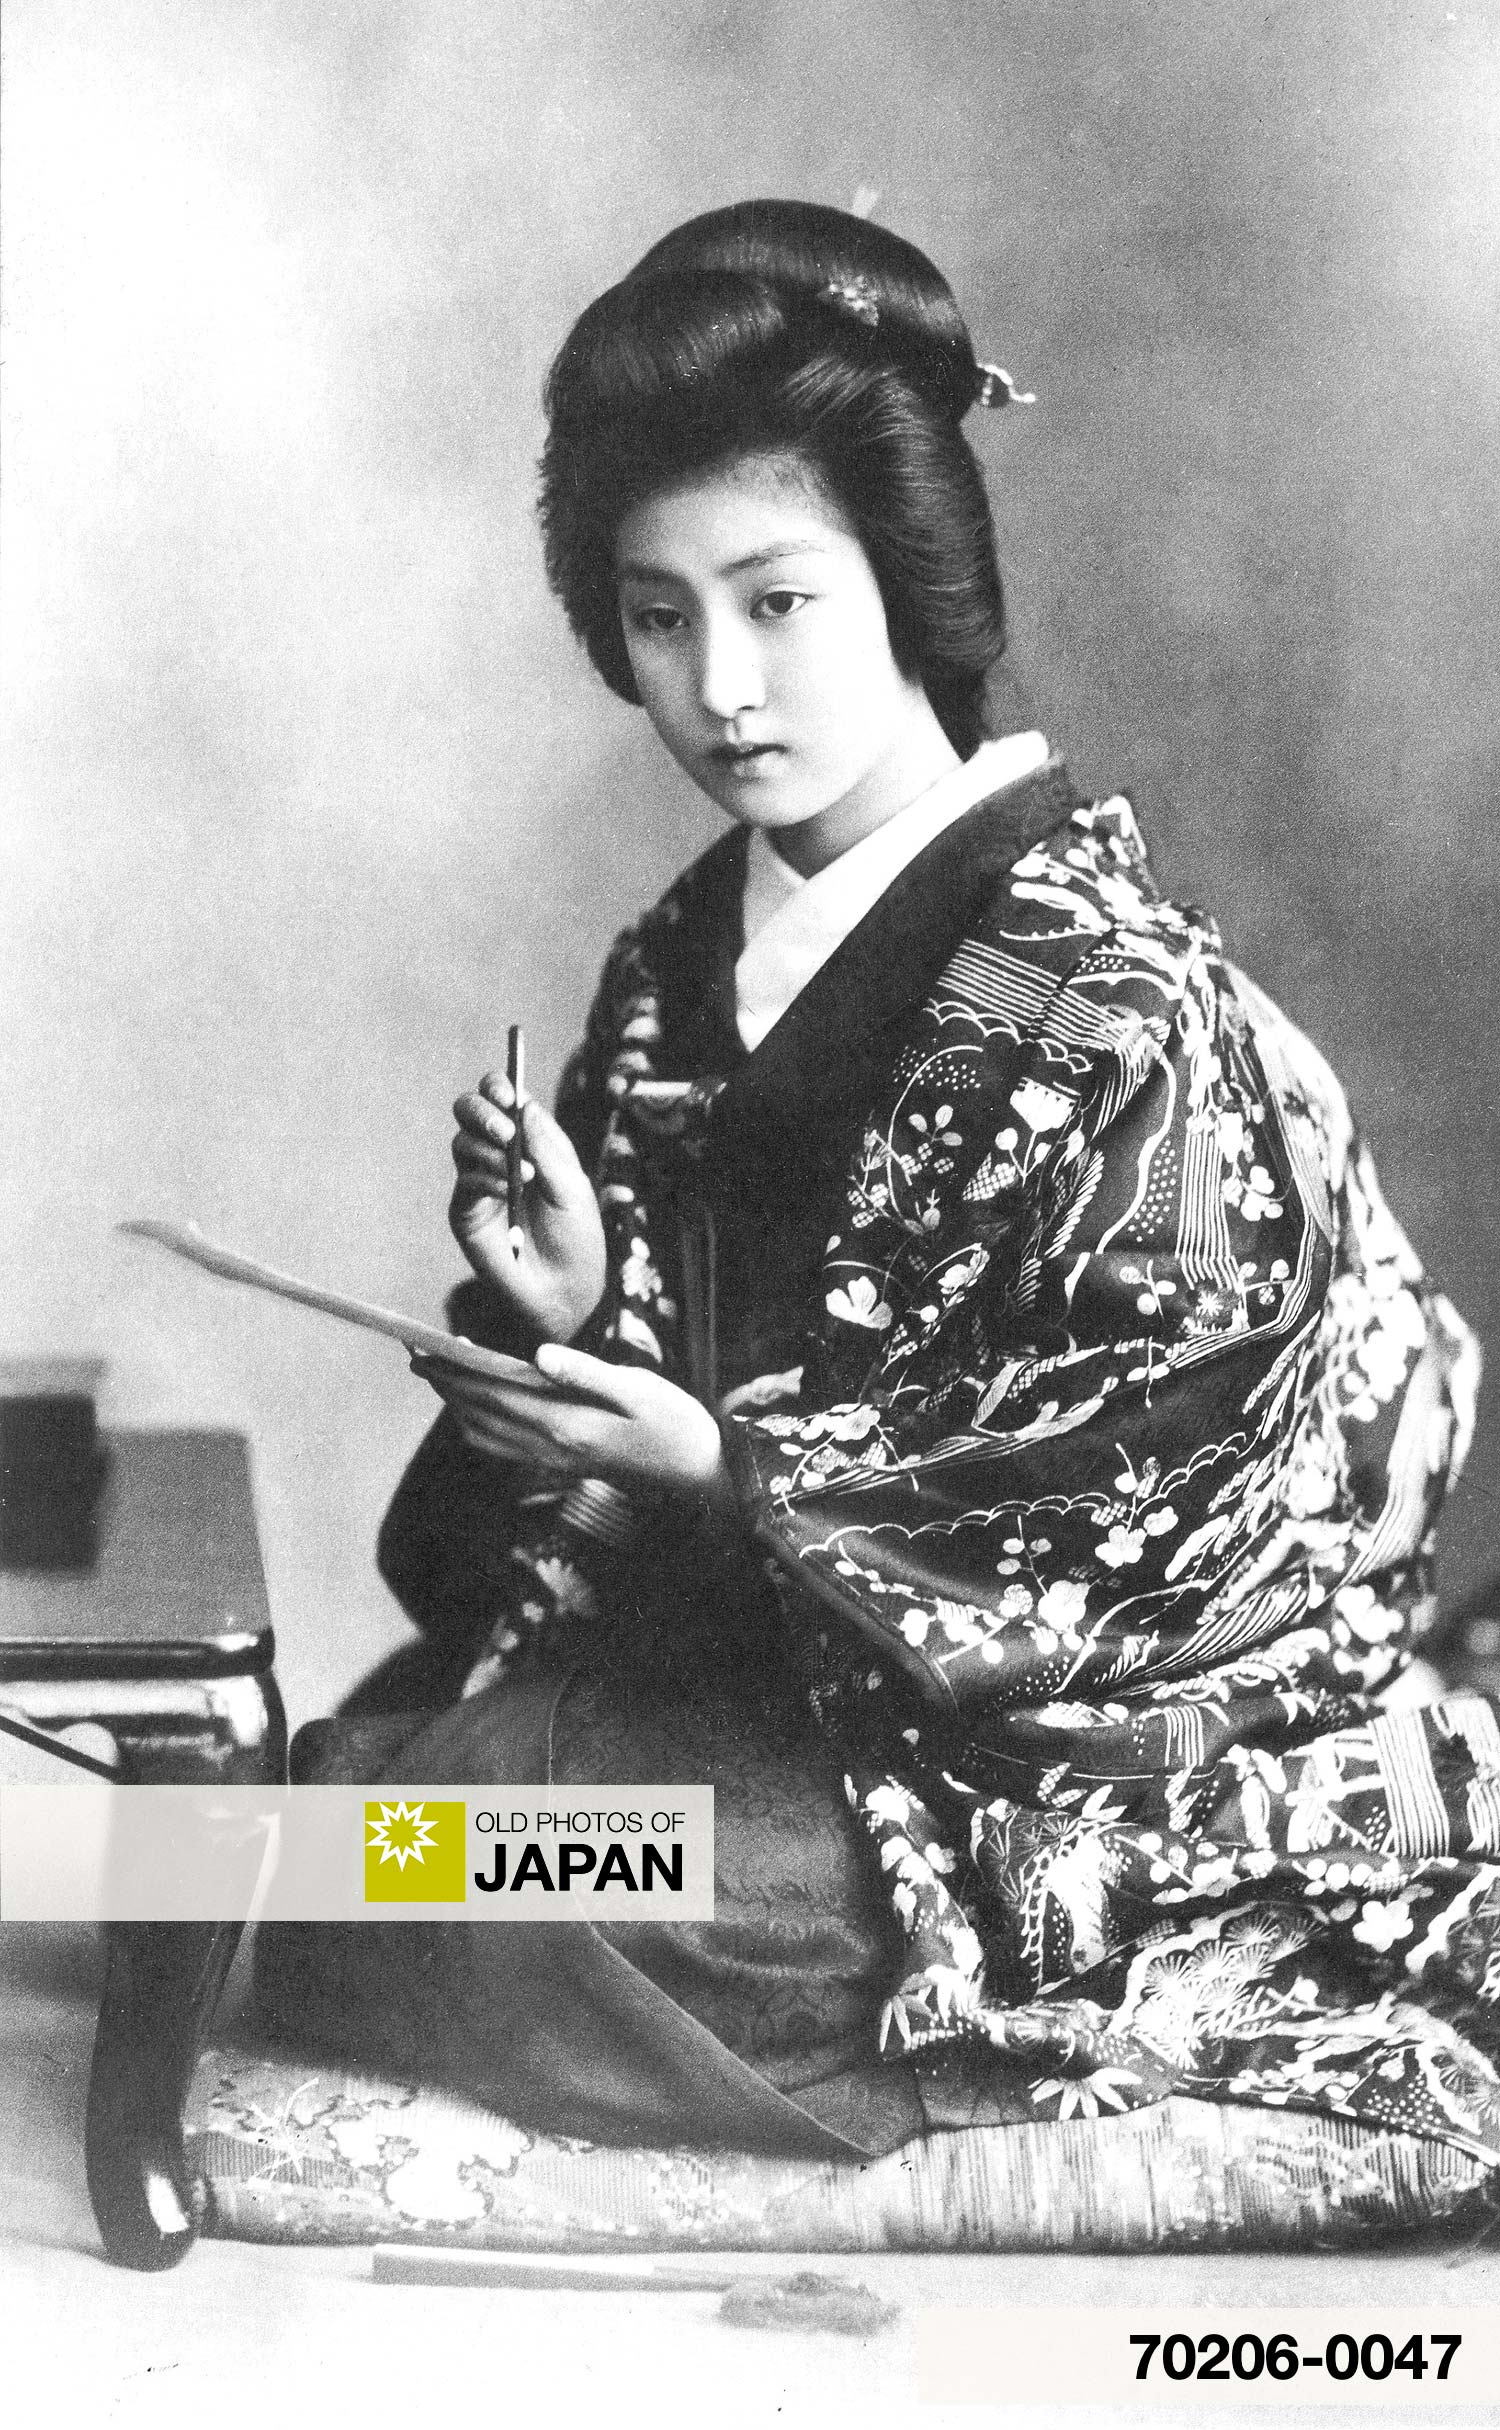 Woman in Kimono Writing